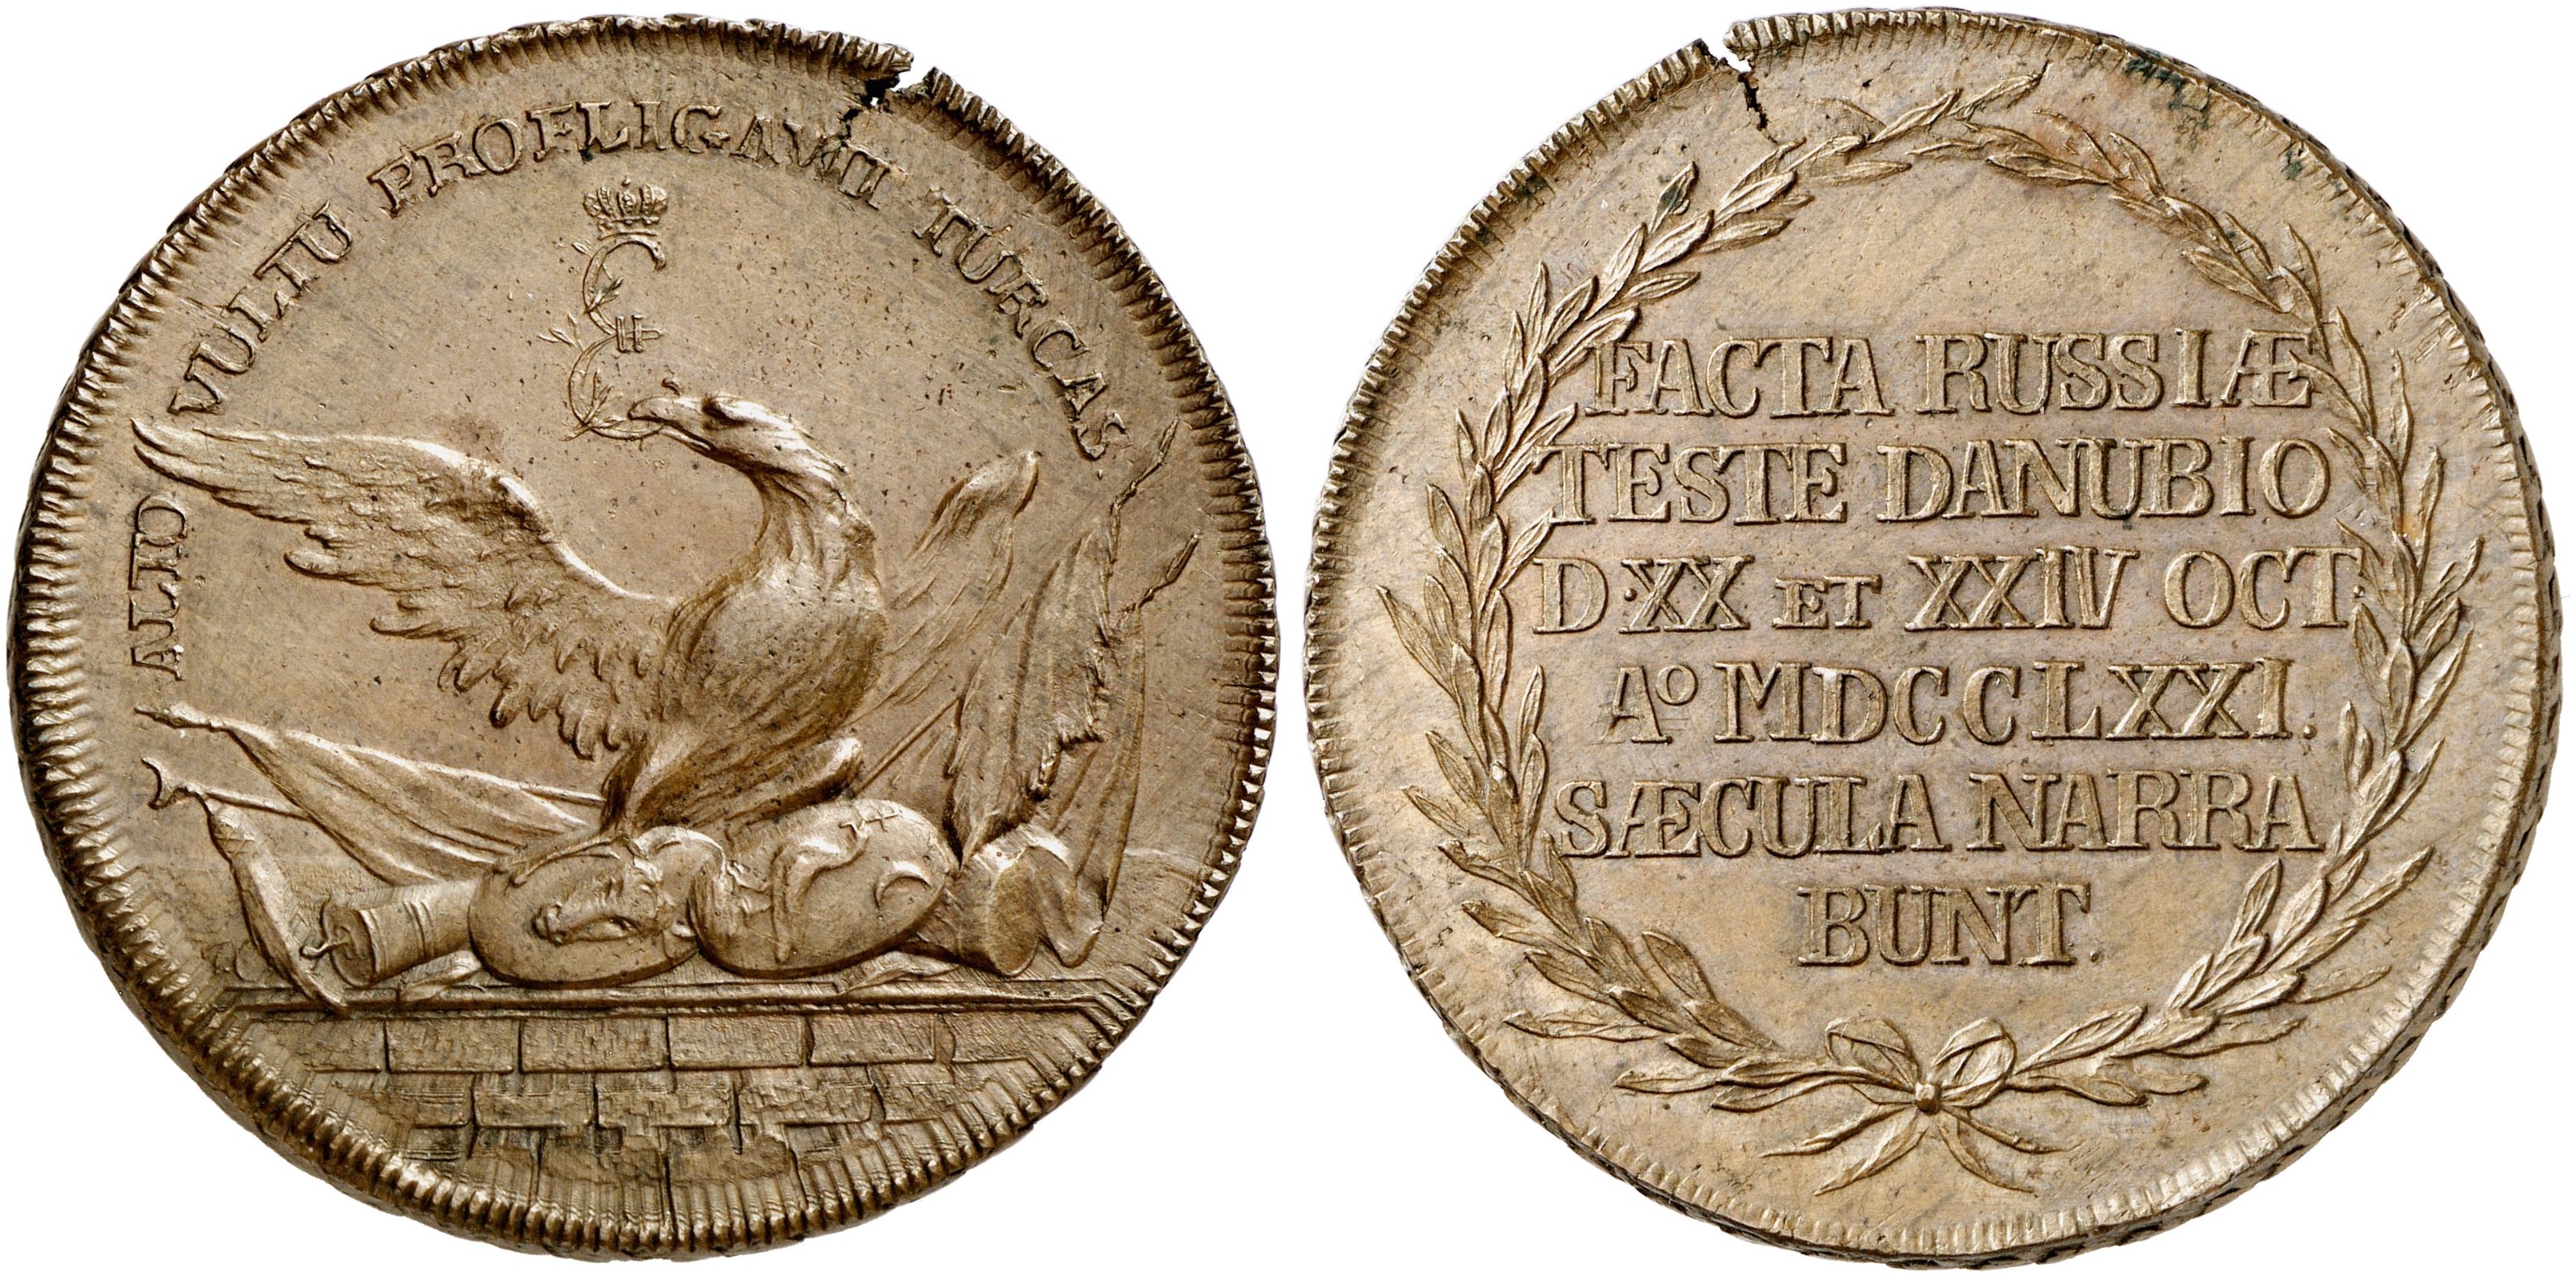 Монета памяти победы. Монета Валахии. Медали 1796 года. Золотые монеты 1771 года Европы. Medal 1771 moldavian.